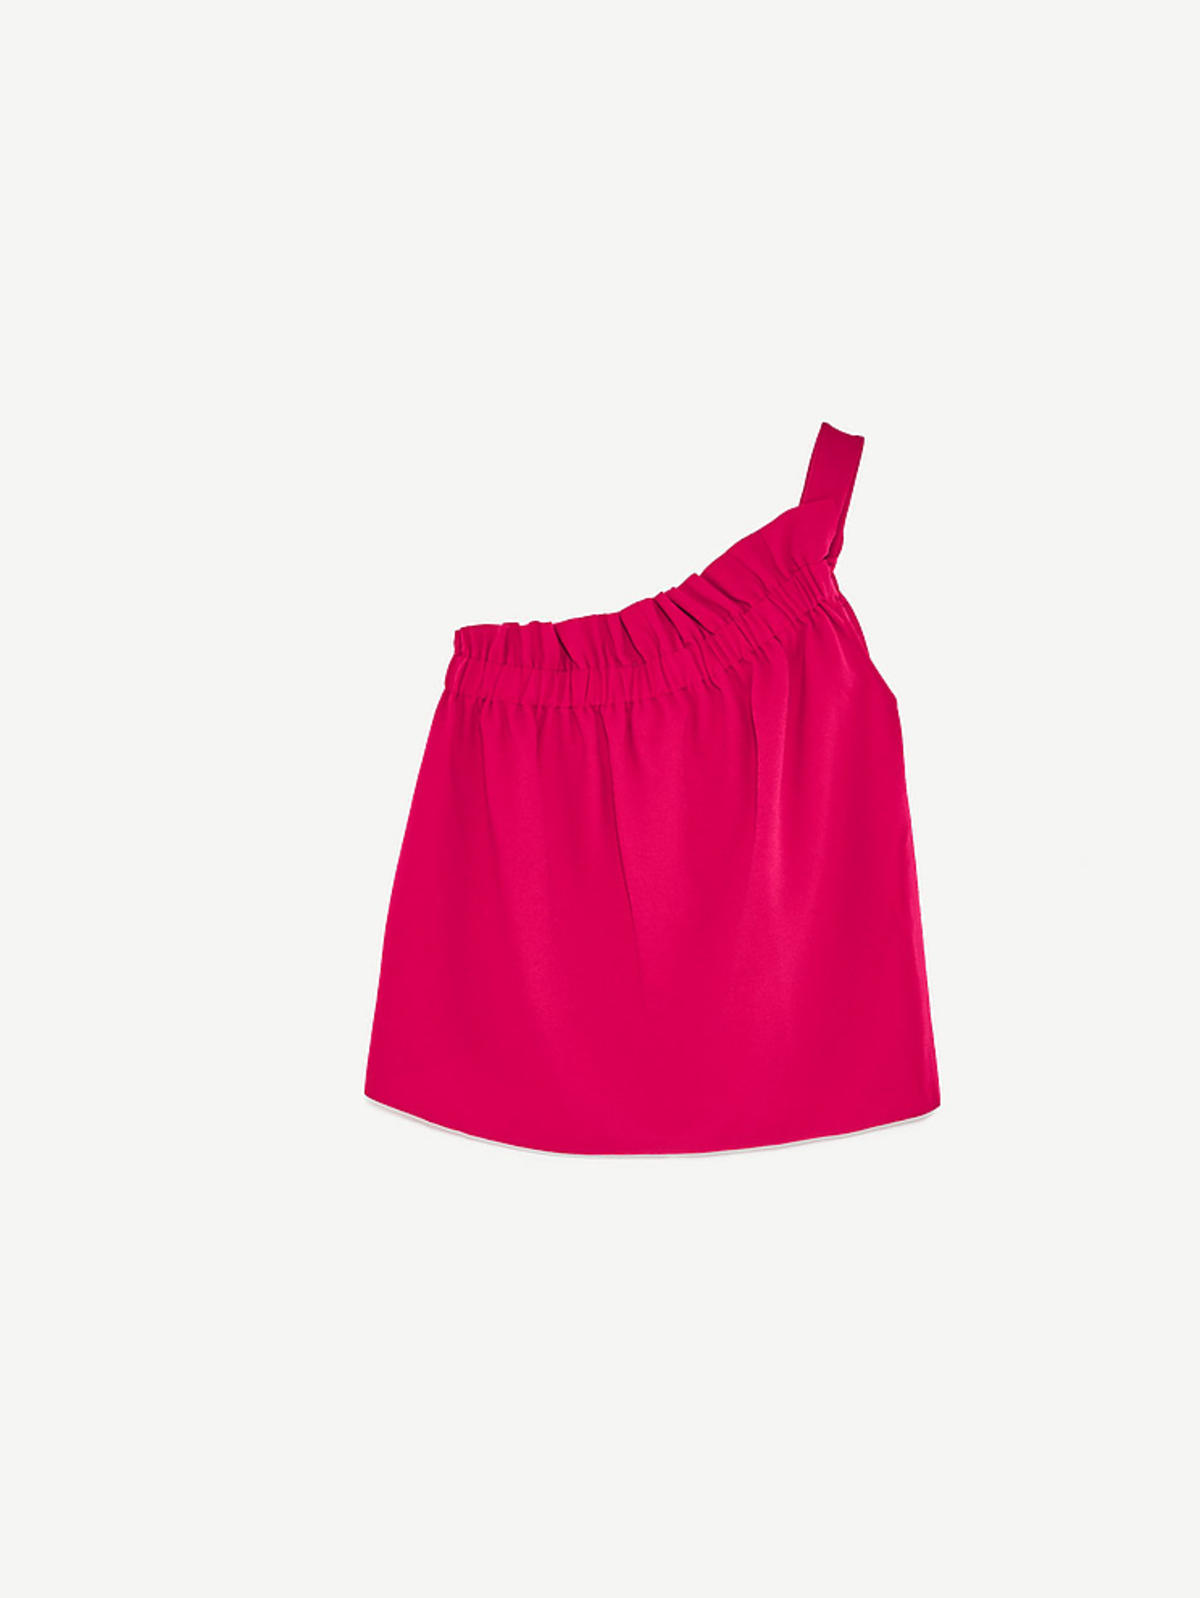 Różowa bluzka asymetryczna, Zara, 69.90 zł